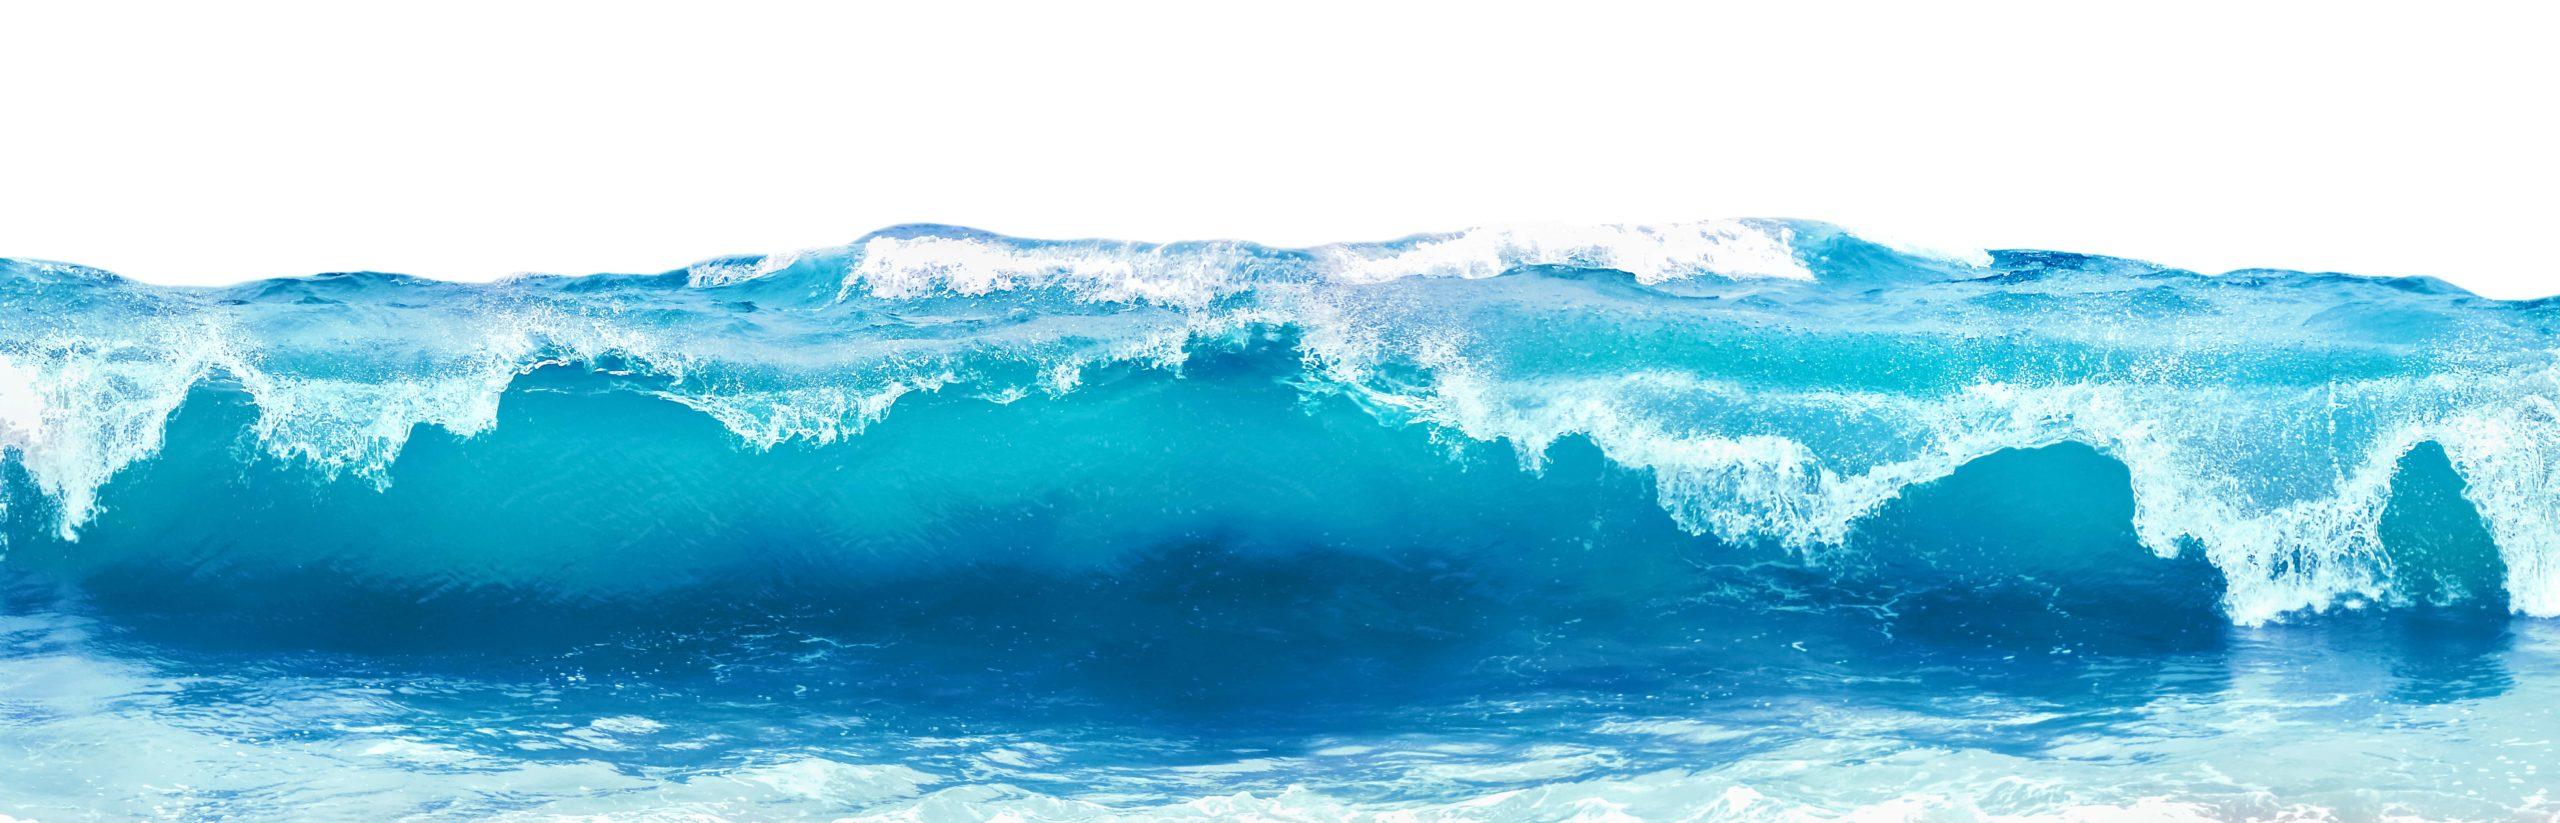 Blaue Meereswelle mit weißem Schaum lokalisiert auf weißem Hintergrund.